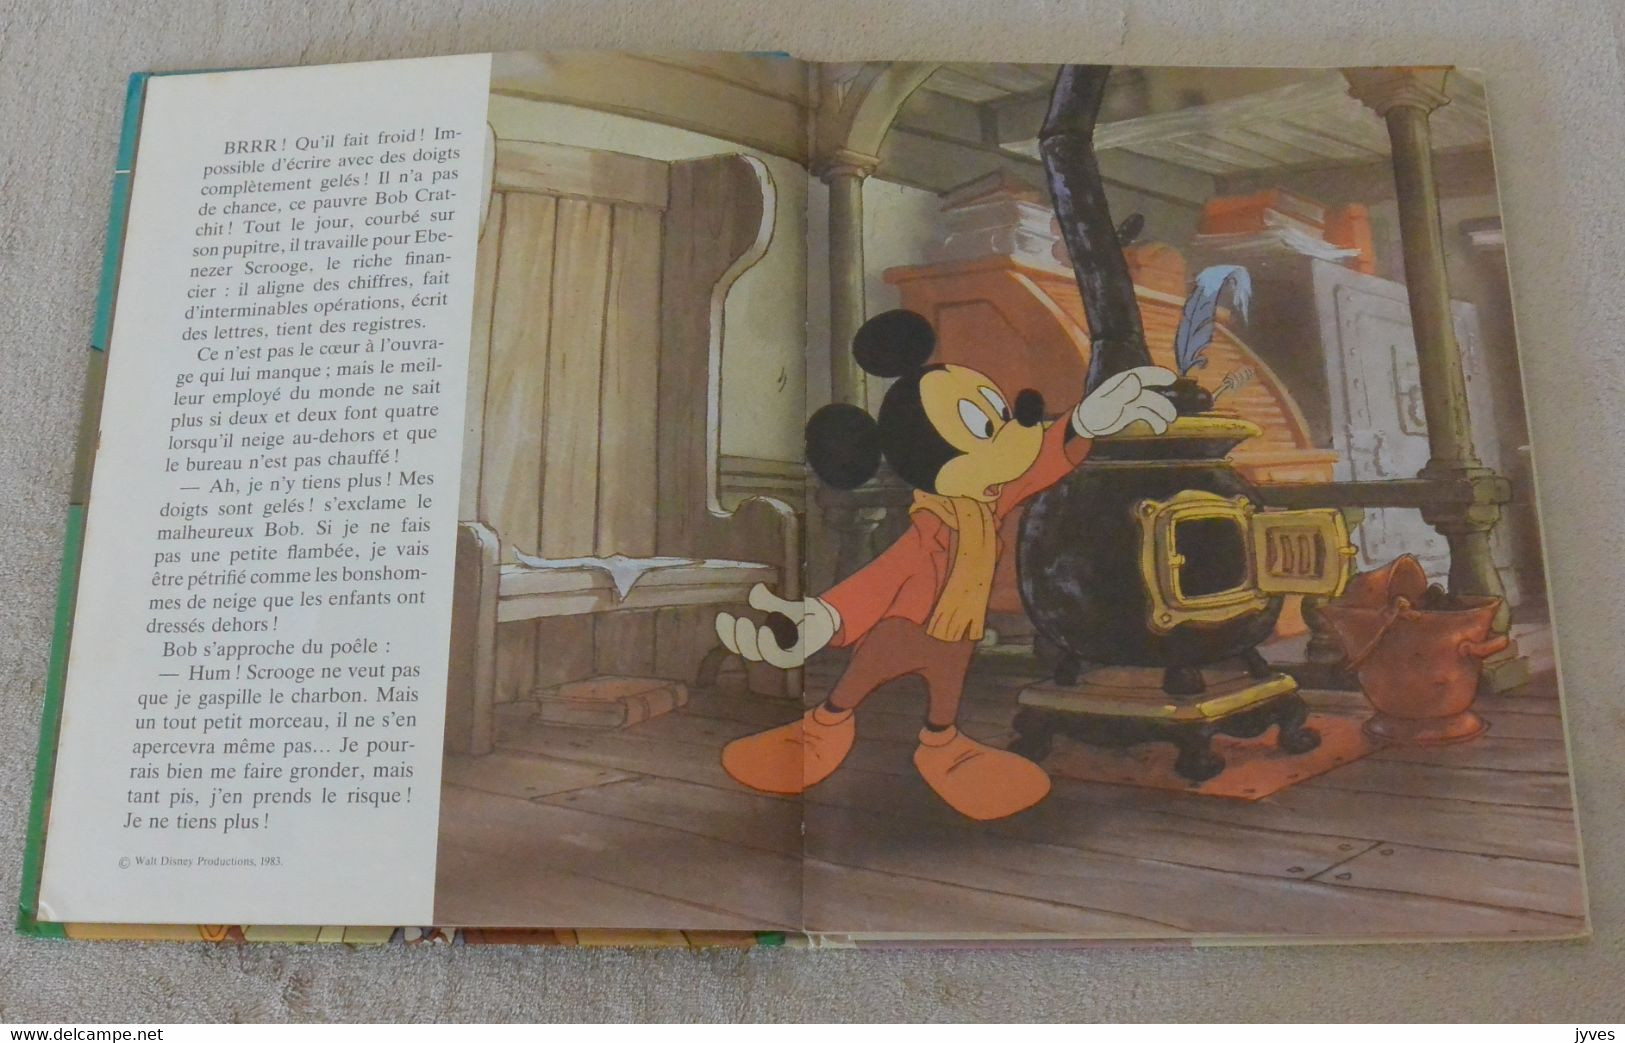 Le Journal De Mickey - Walt Disney - Histoire Du Film - Disney